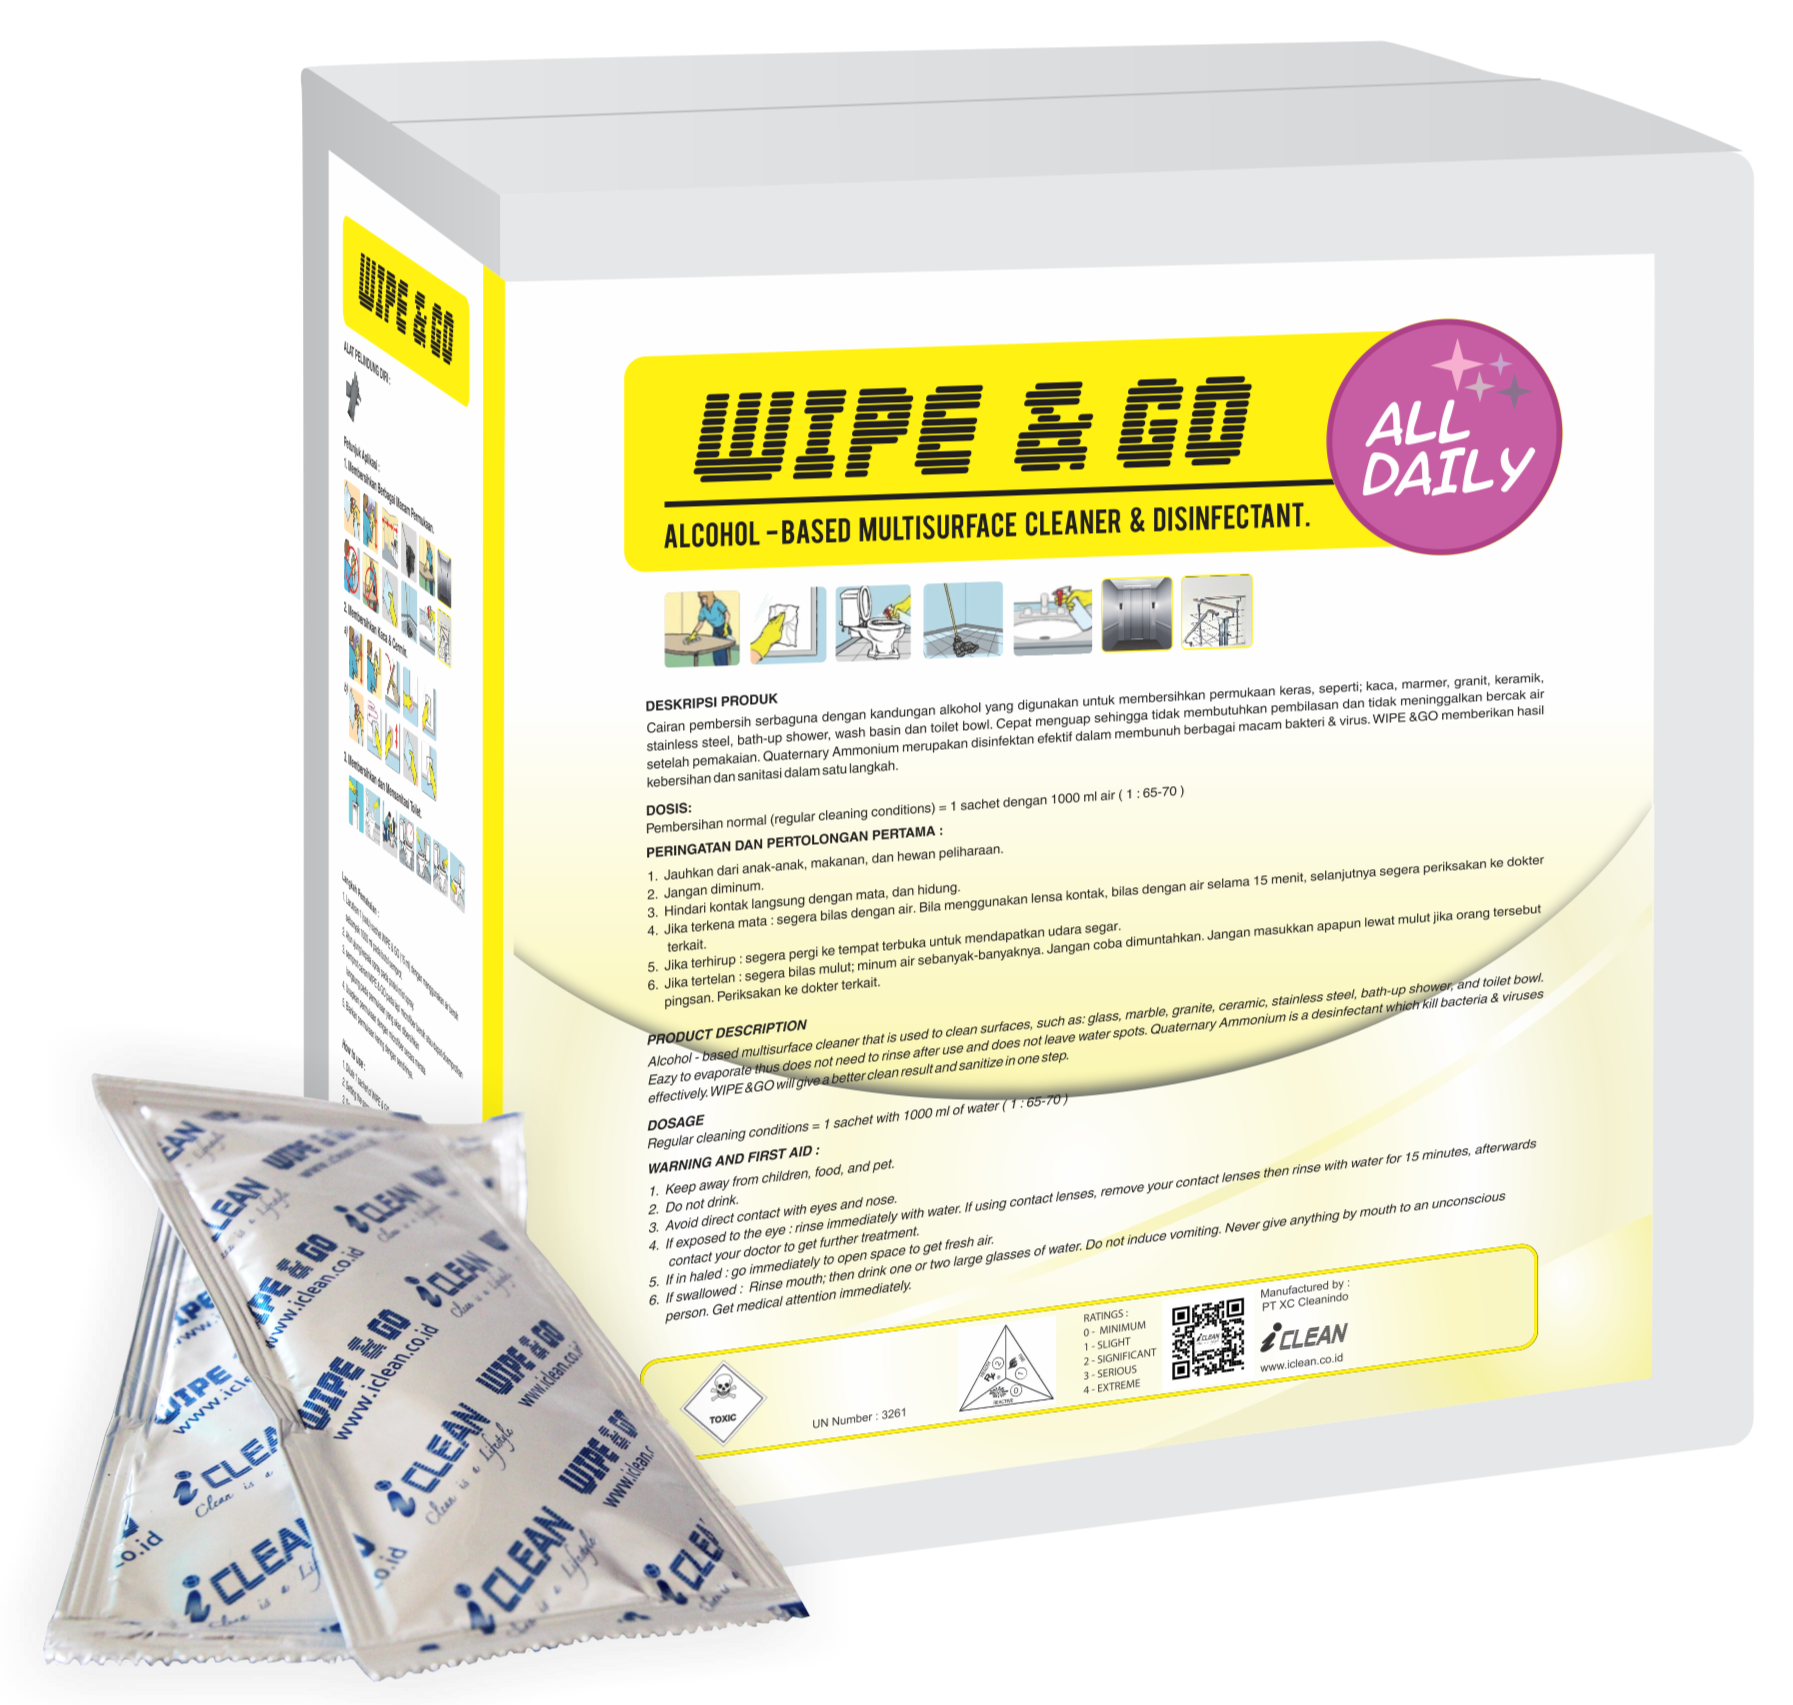 Wipe&Go